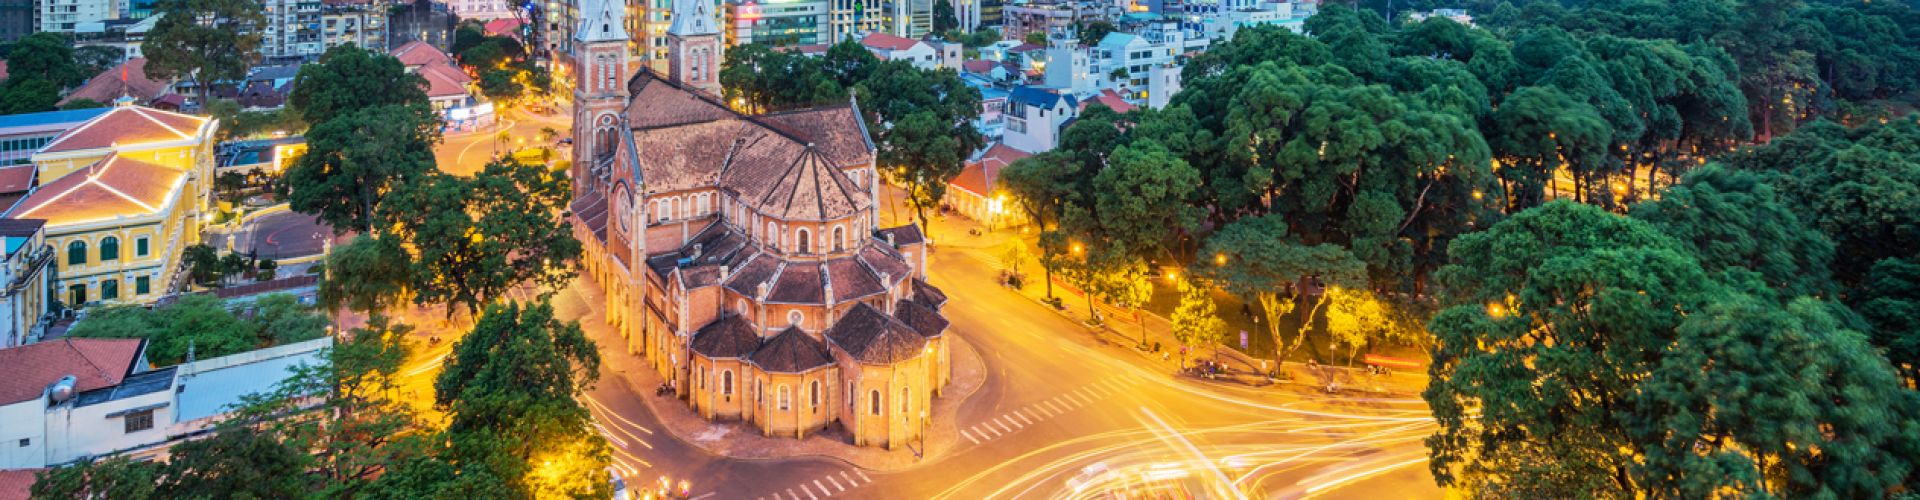 Các điểm du lịch tại Thành Phố Hồ Chí Minh